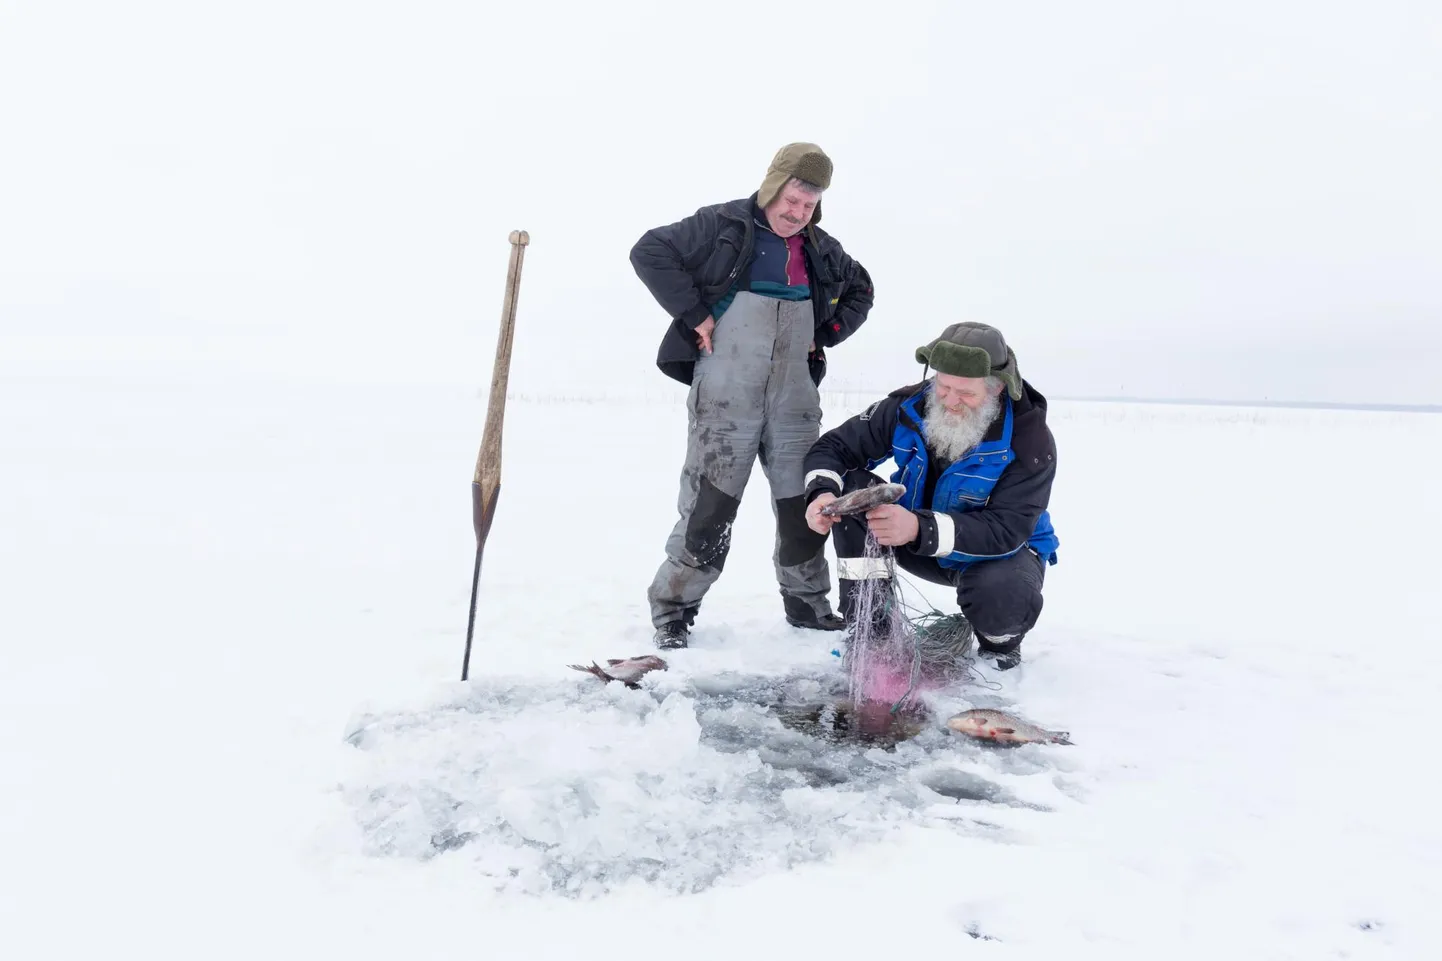 Võrtsjärve kalurid Ants Leiaru (habemega) ja Marko Vaher on tänavu talvel saanud rõõmustavalt palju teha jääalust püüki.